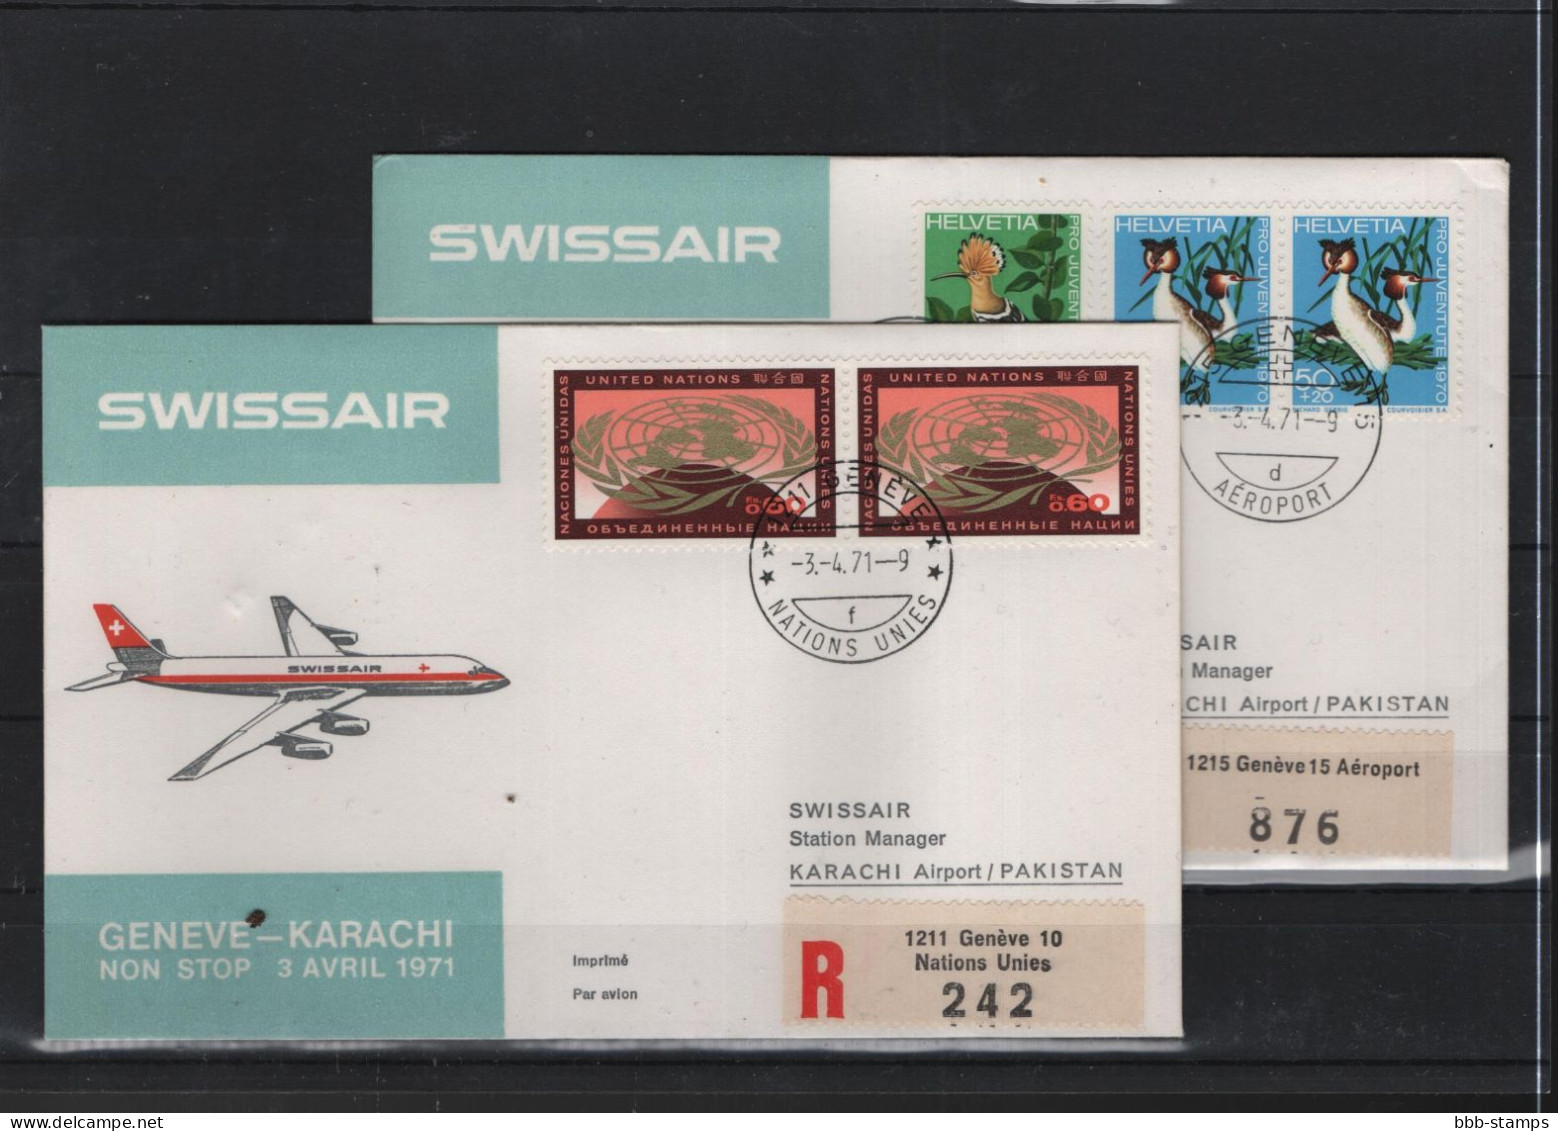 Schweiz Luftpost FFC Swissair 3.4.1971 Genf - Karachi - First Flight Covers